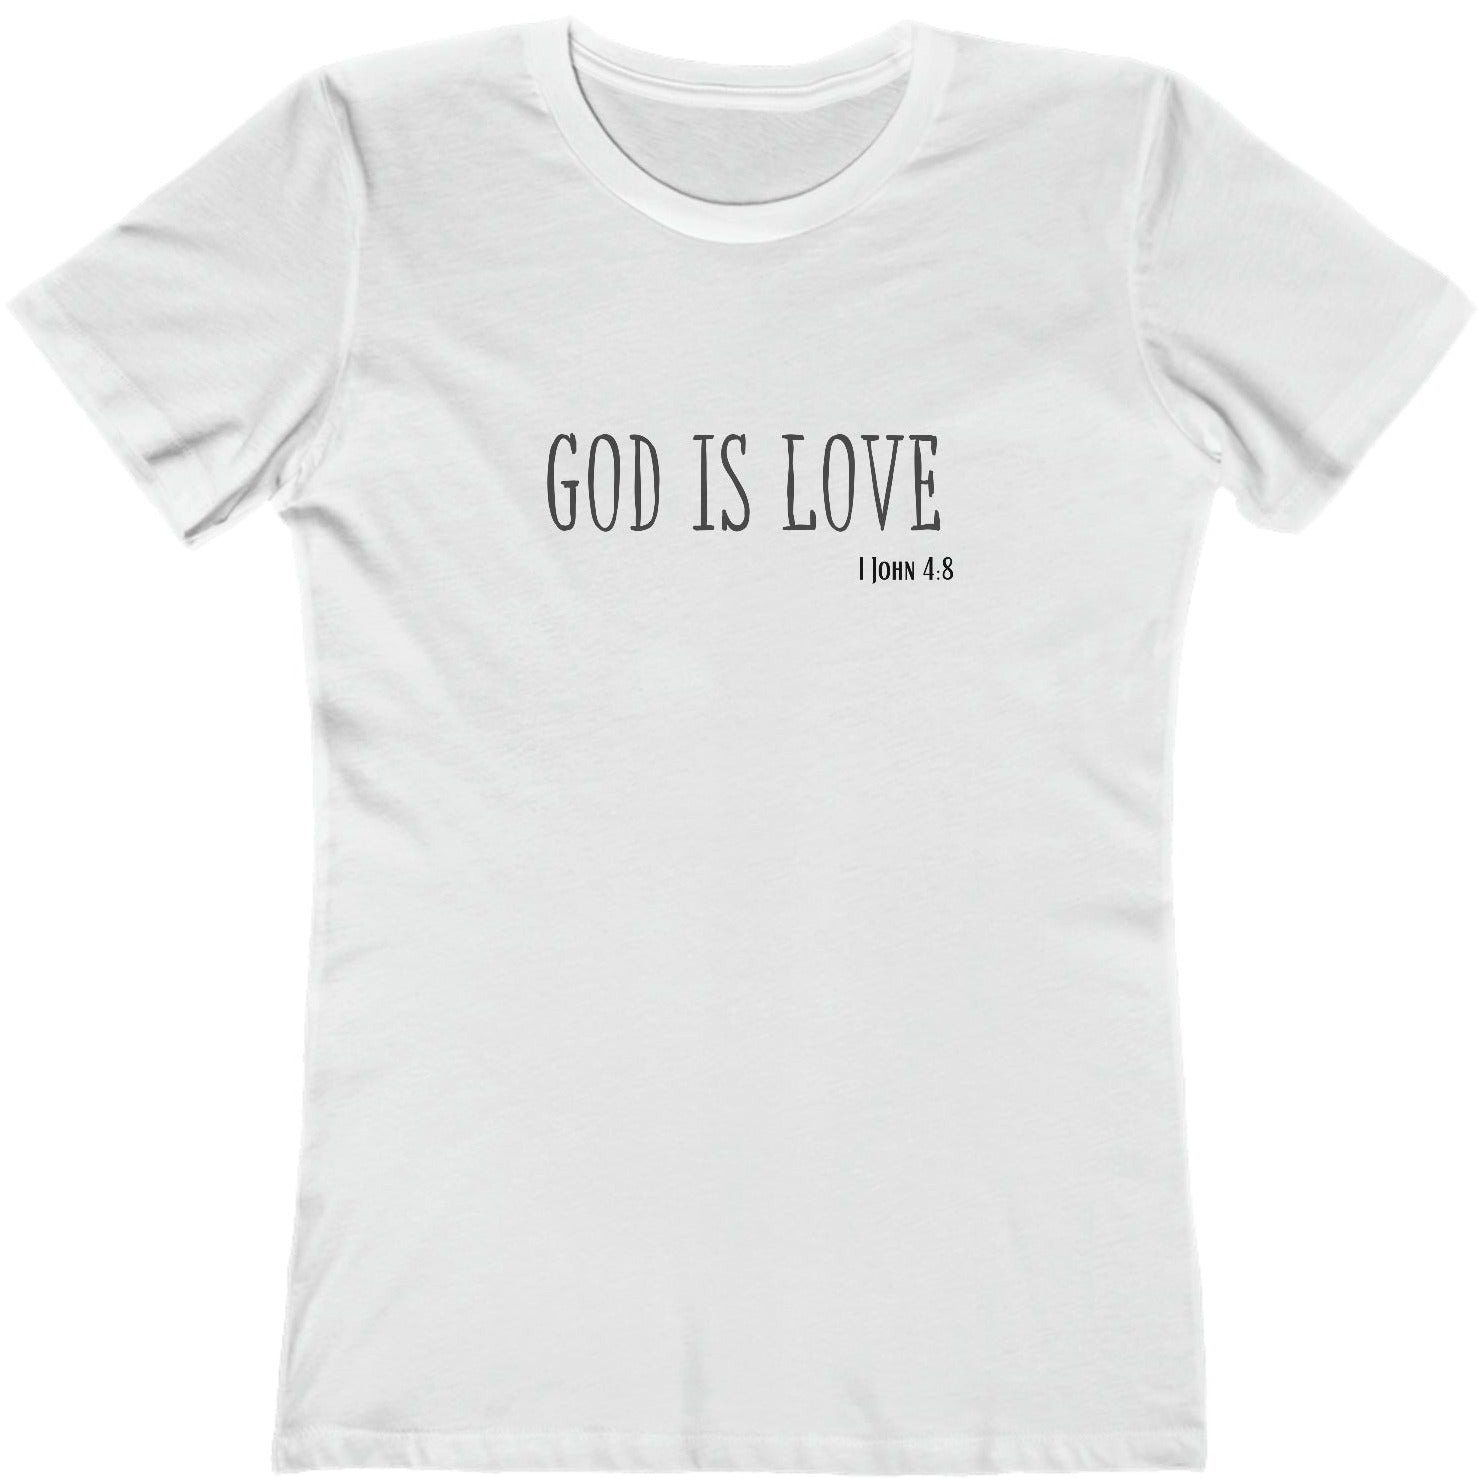 1 John 4:8 God is Love, Christian T-shirt for Women white